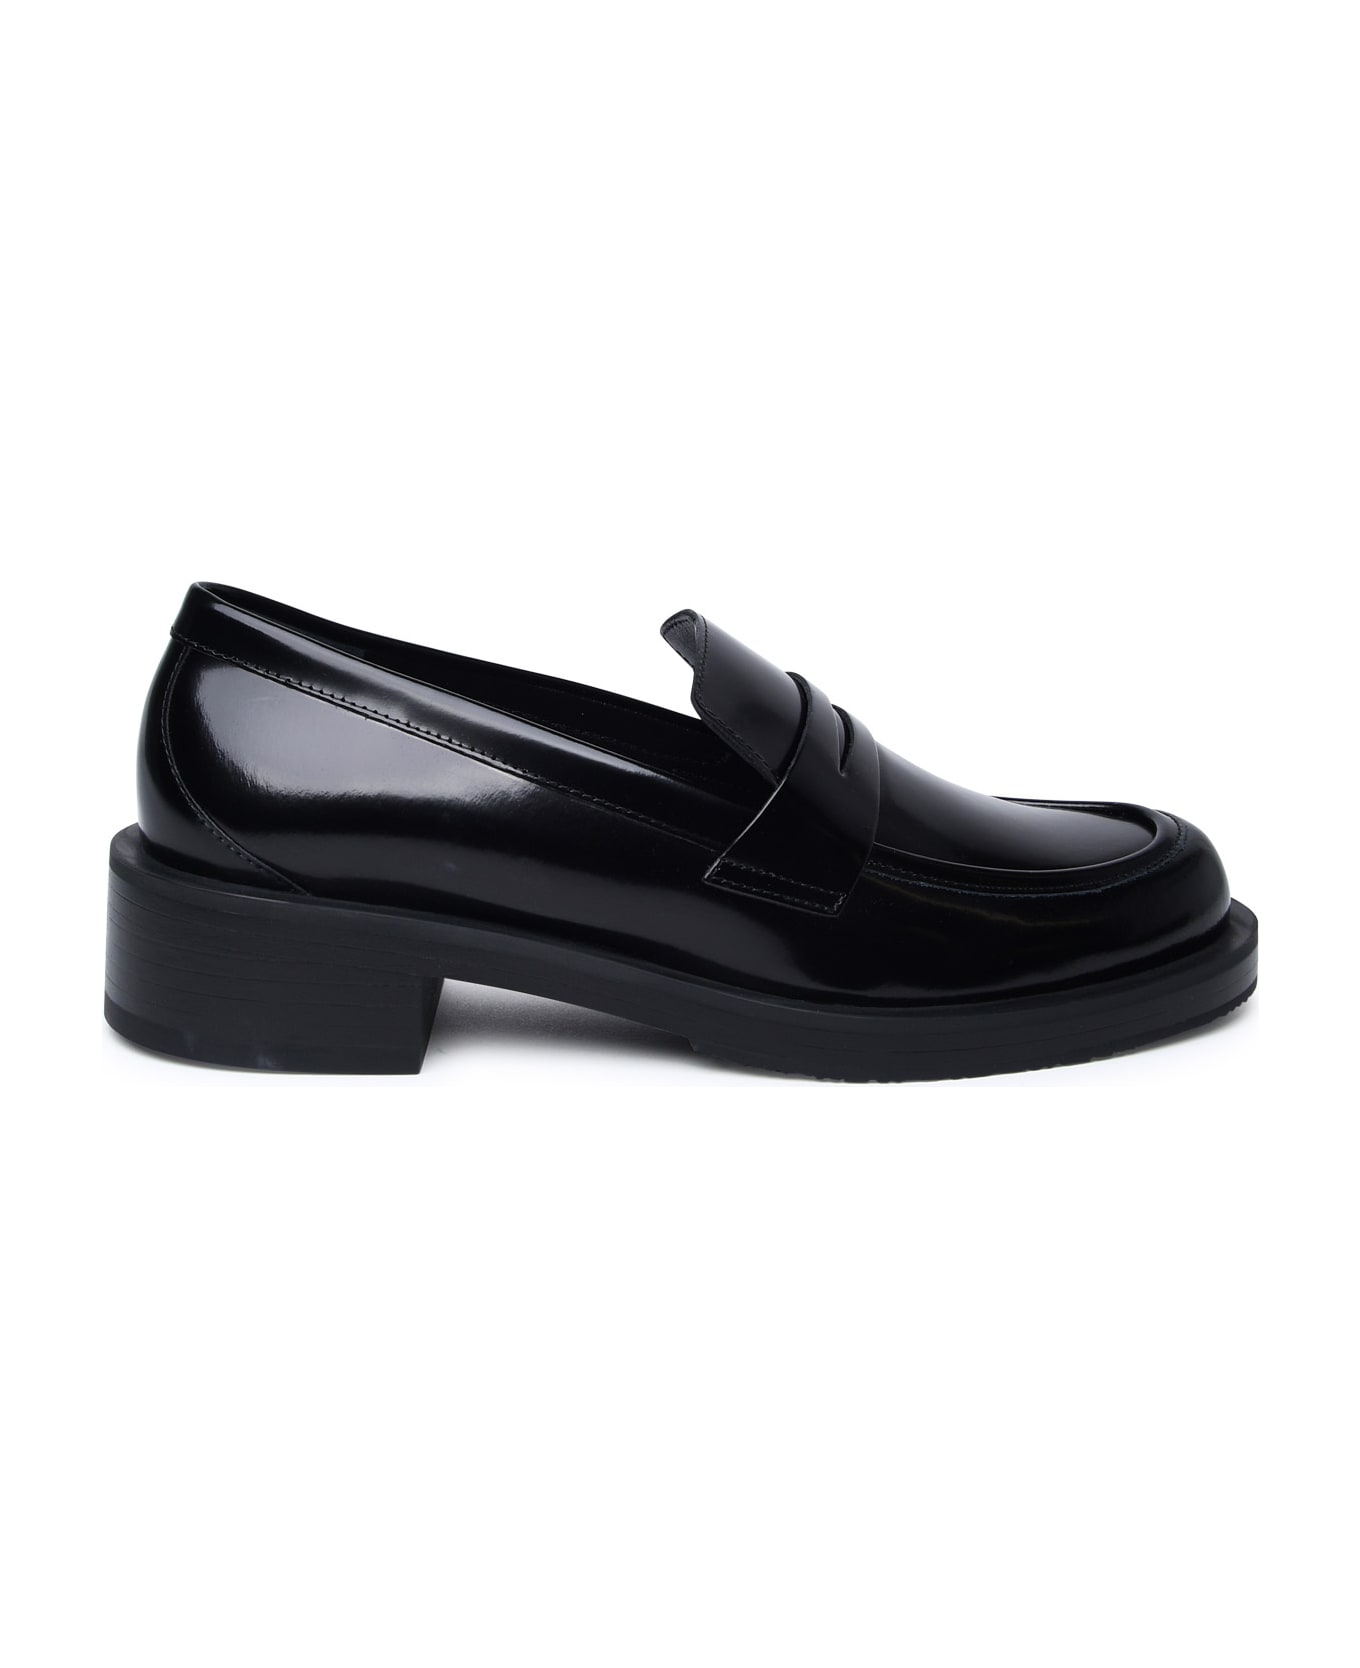 Stuart Weitzman Black Shiny Leather Loafers - Black